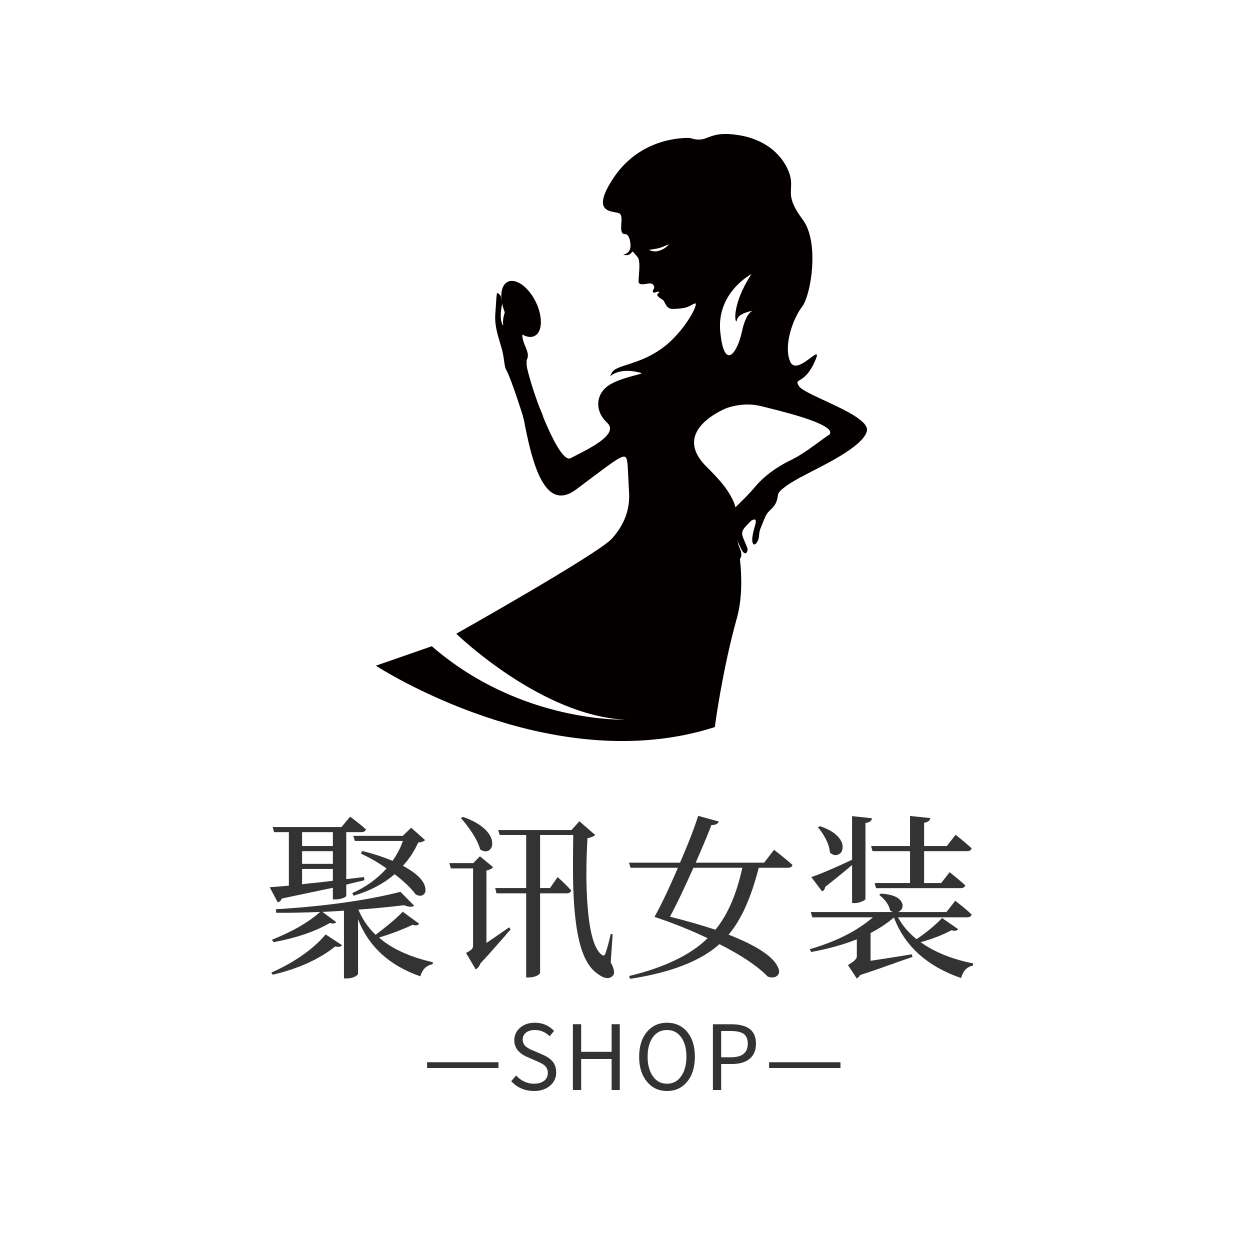 女装/简约时尚/店标/头像logo